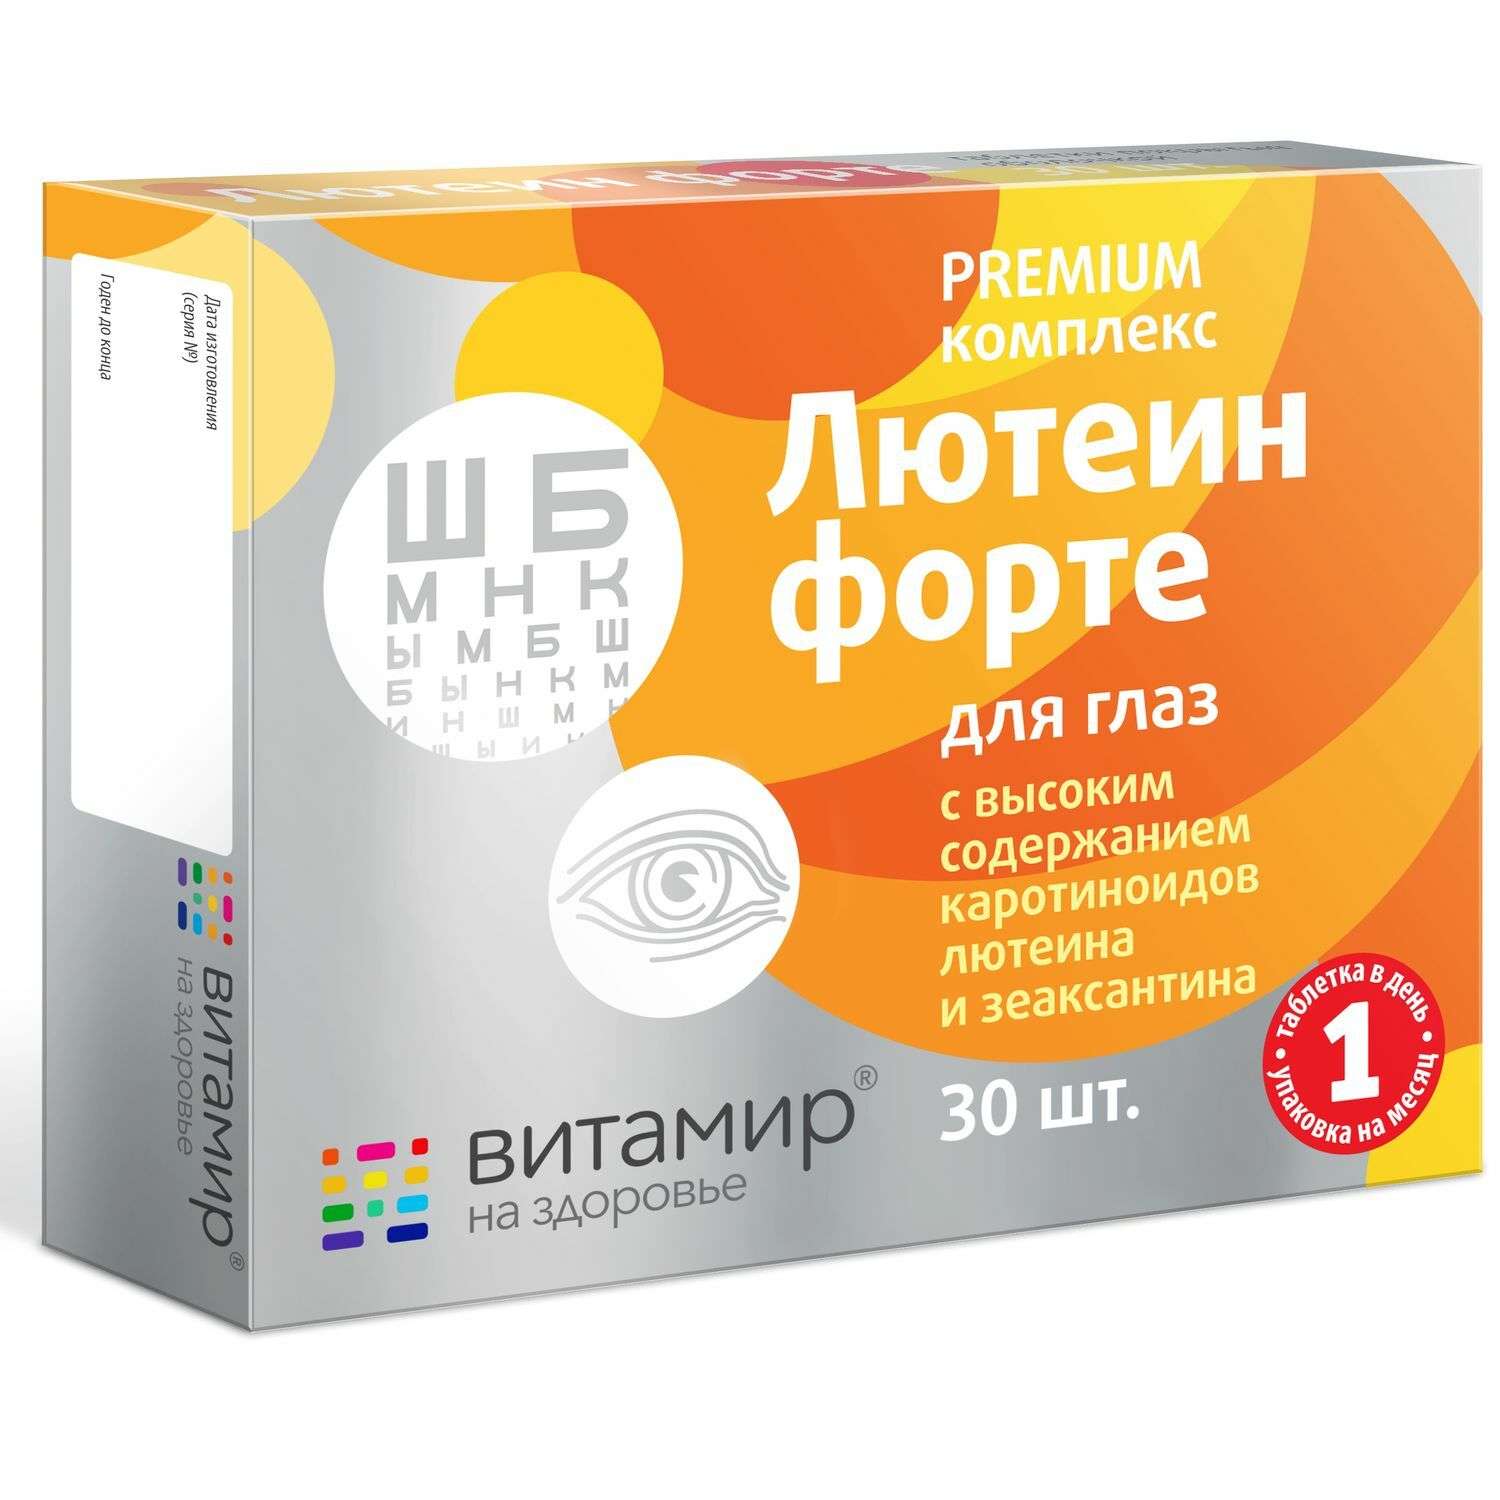 Витамир Лютеин форте витамины для глаз 30таблеток - фото 1